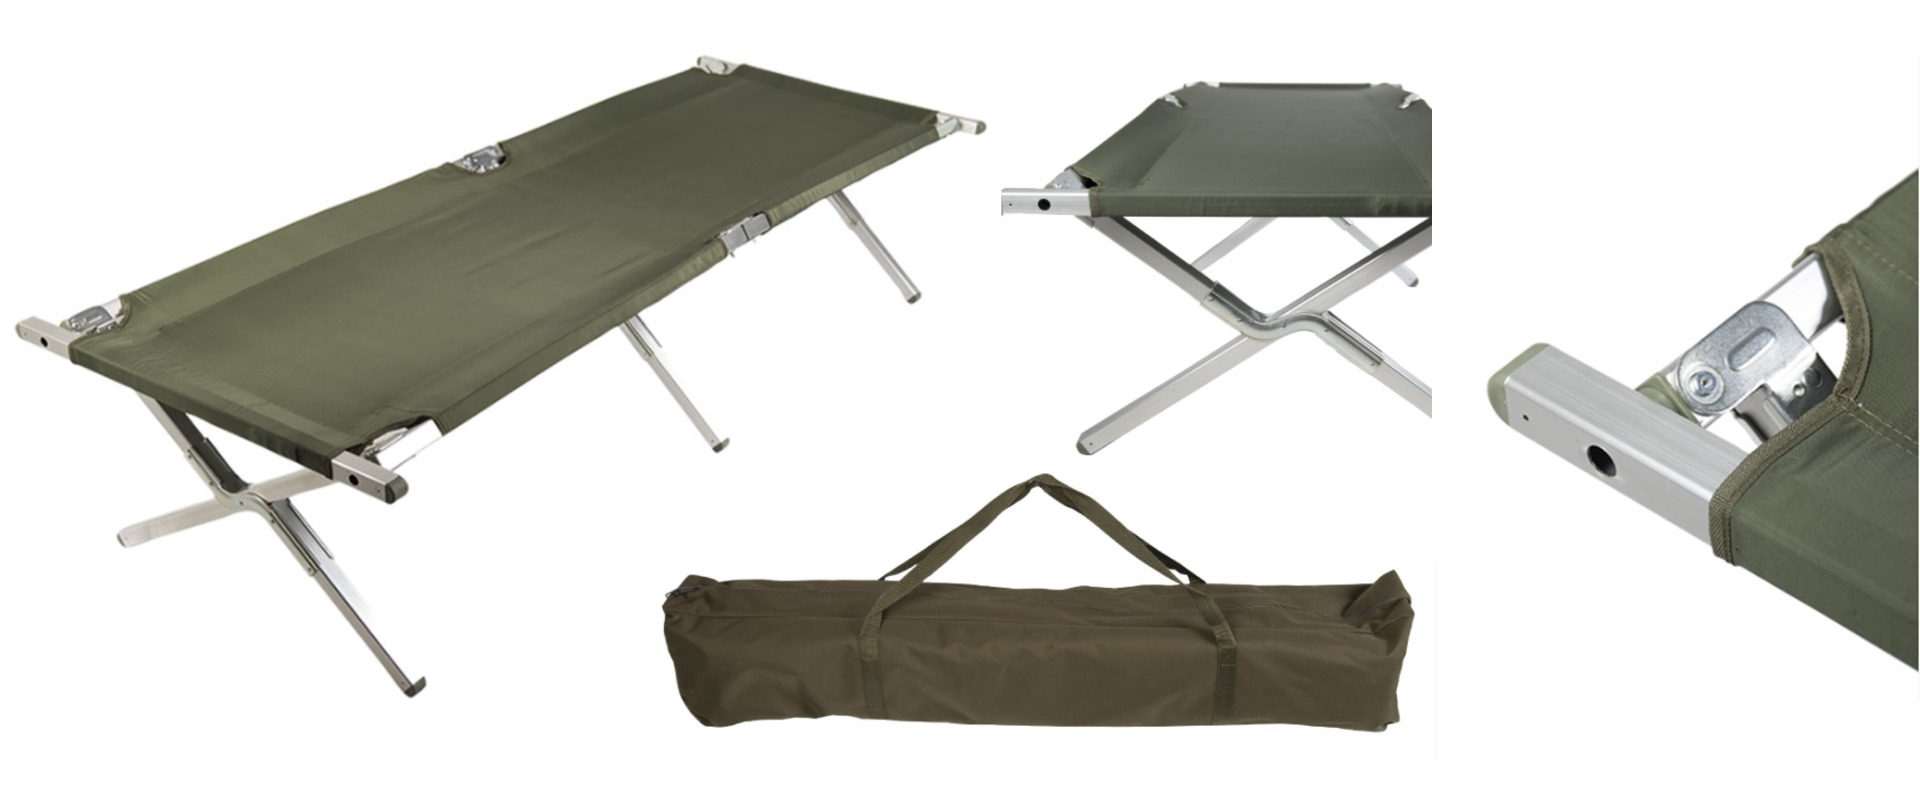 Pridobite udobno vojaško zložljivo posteljo z nosilnostjo do 160 kg. Enostavno zložljiva terenska postelja z olivno barvo in transportno torbo. Idealna za vojake, pohodnike in kampiranje.